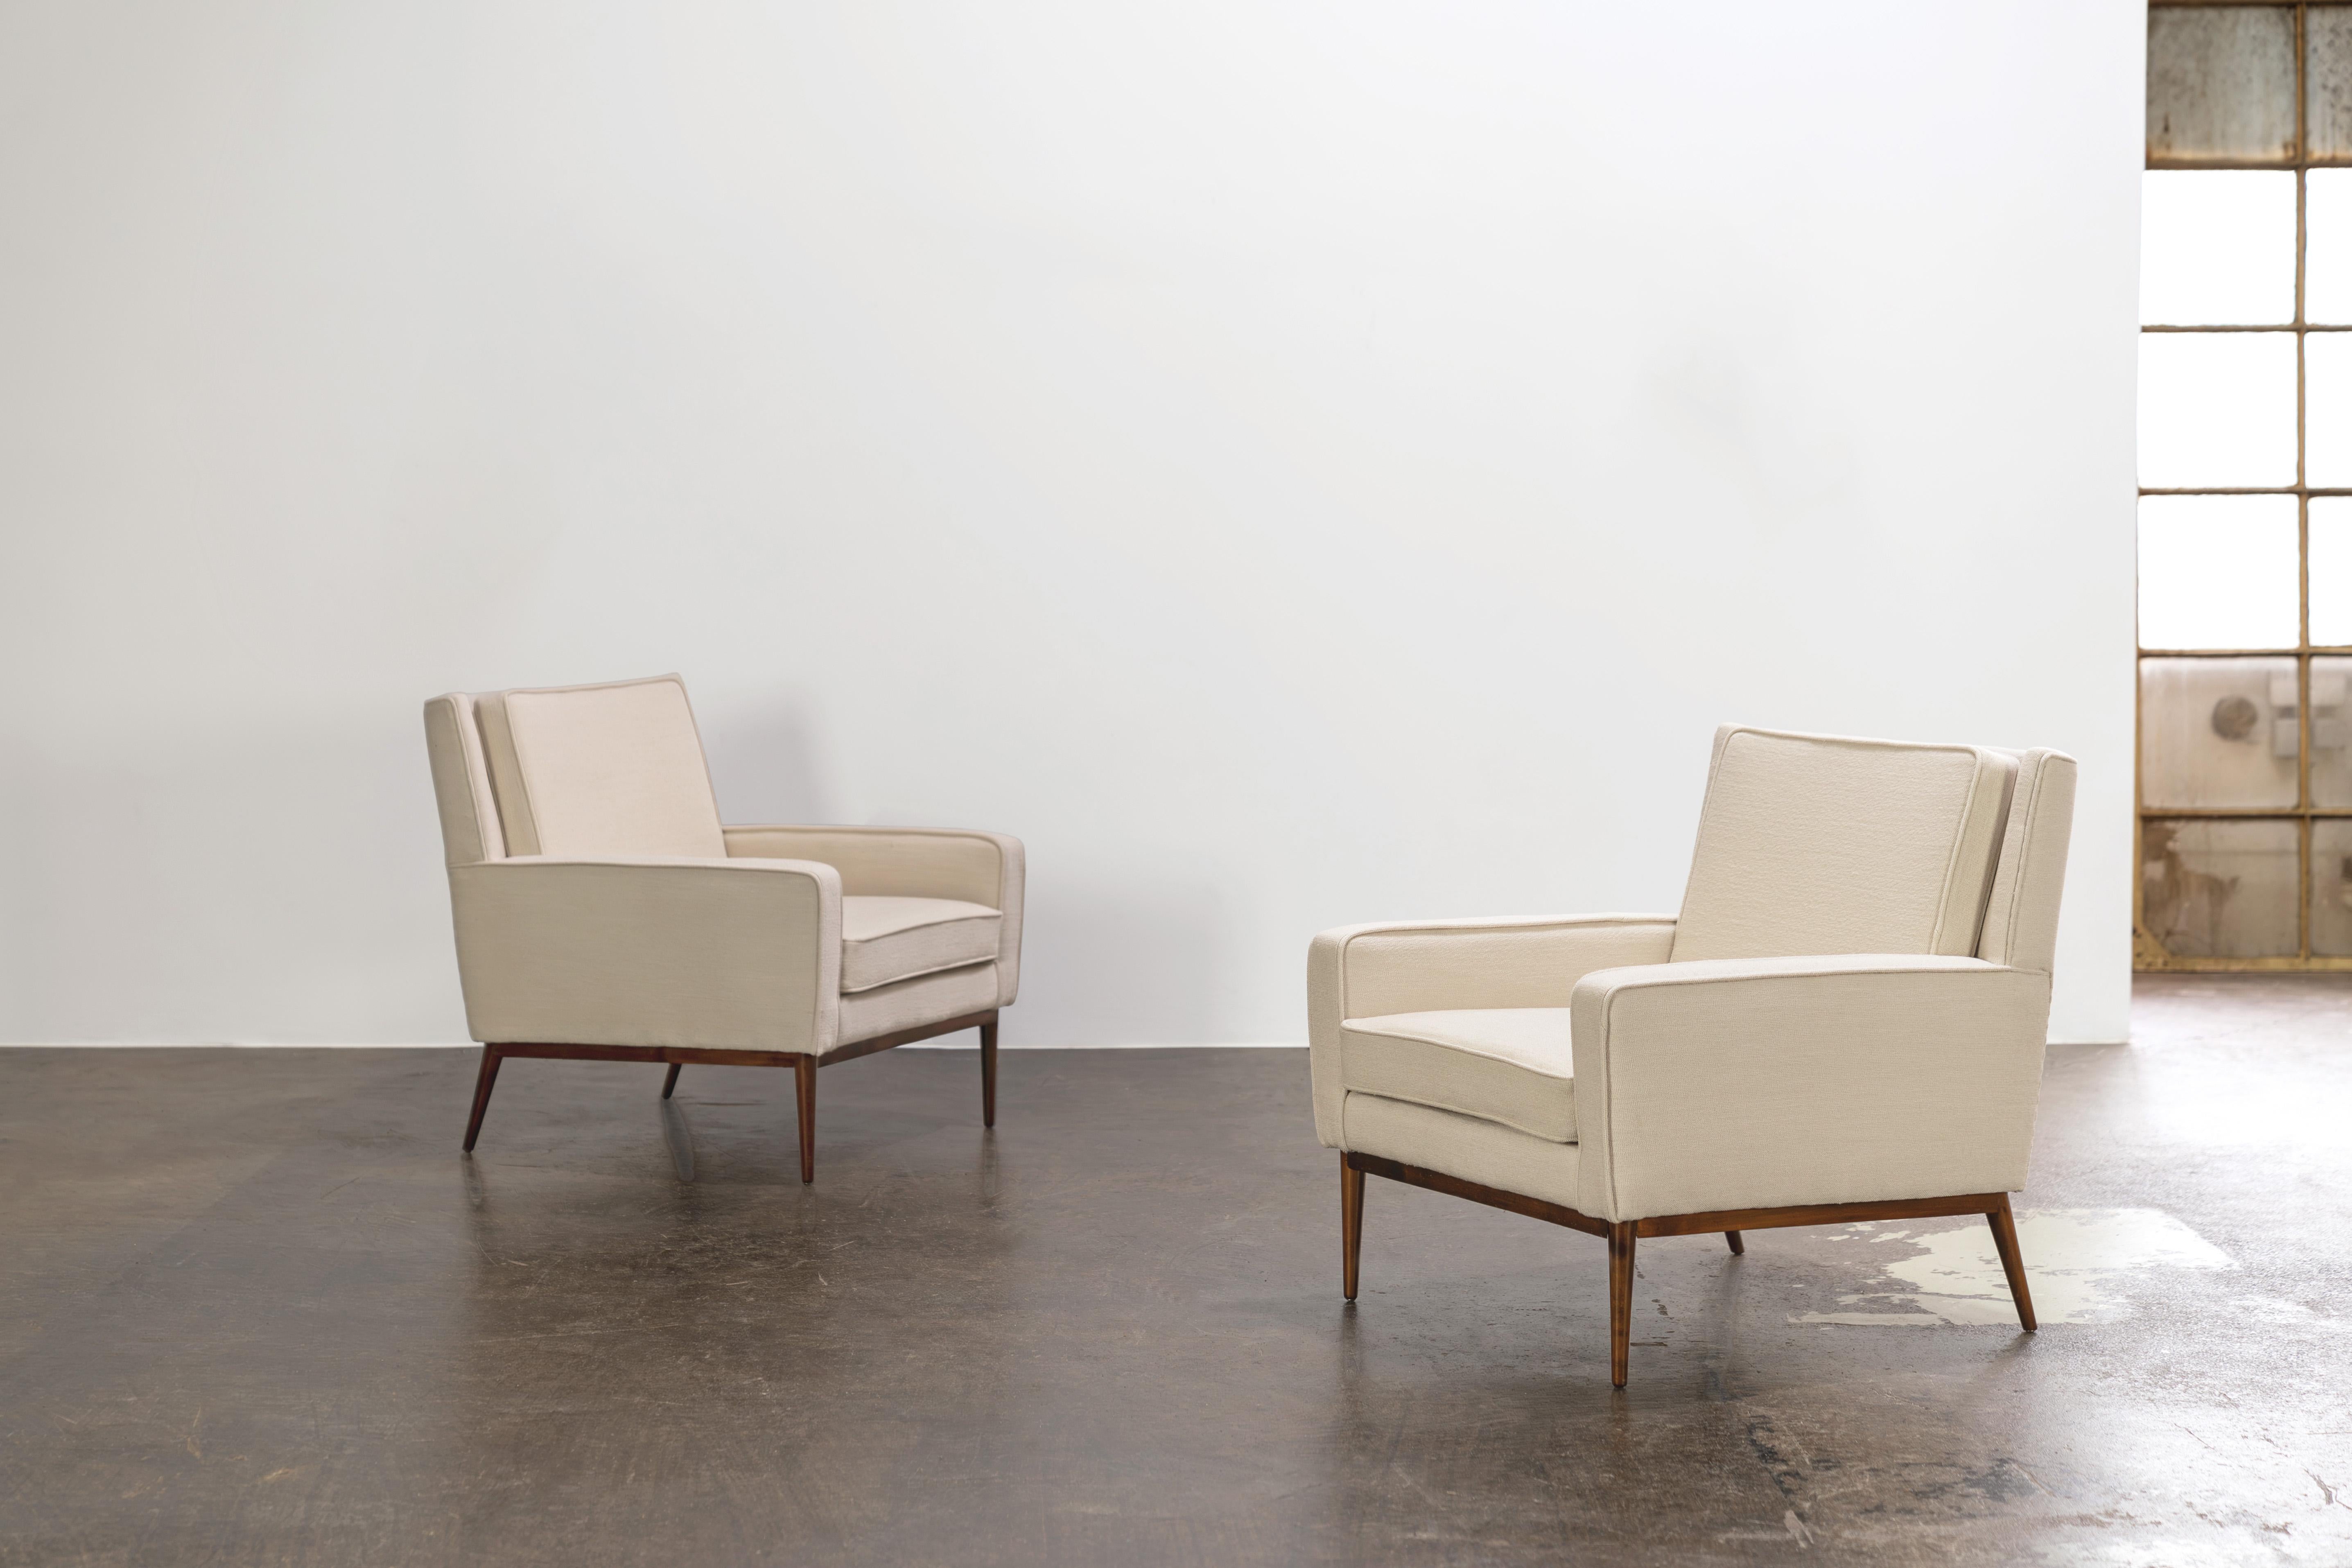 Très confortable et attrayante paire de chaises longues des années 1950 par Paul McCobb. Les fauteuils sont nouvellement tapissés et recouverts d'un tissu de laine blanc cassé de grande qualité.

Modèle 300